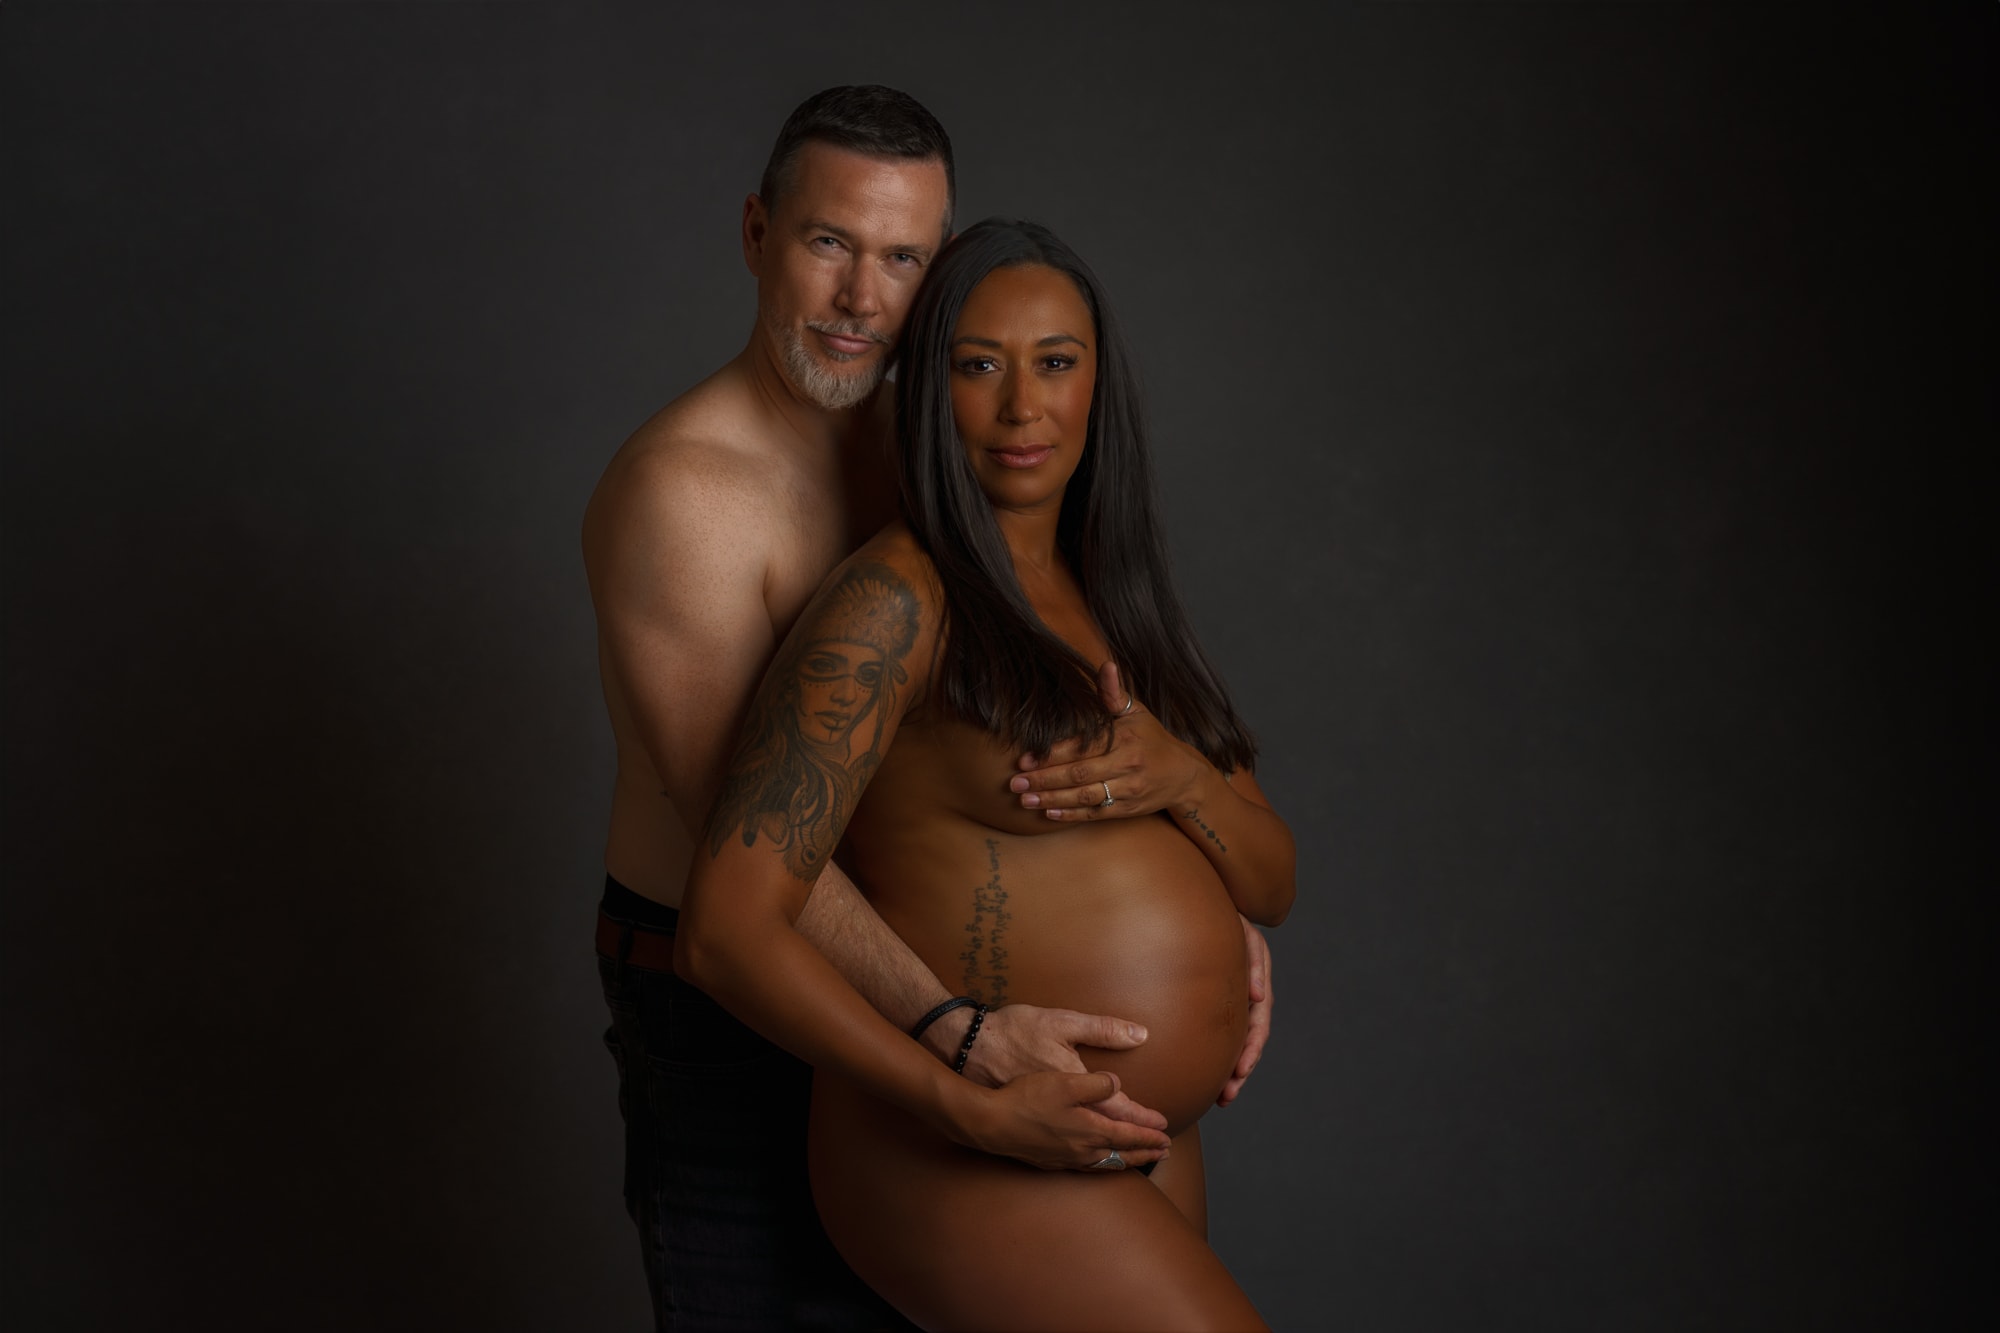 Couple maternity photoshoot